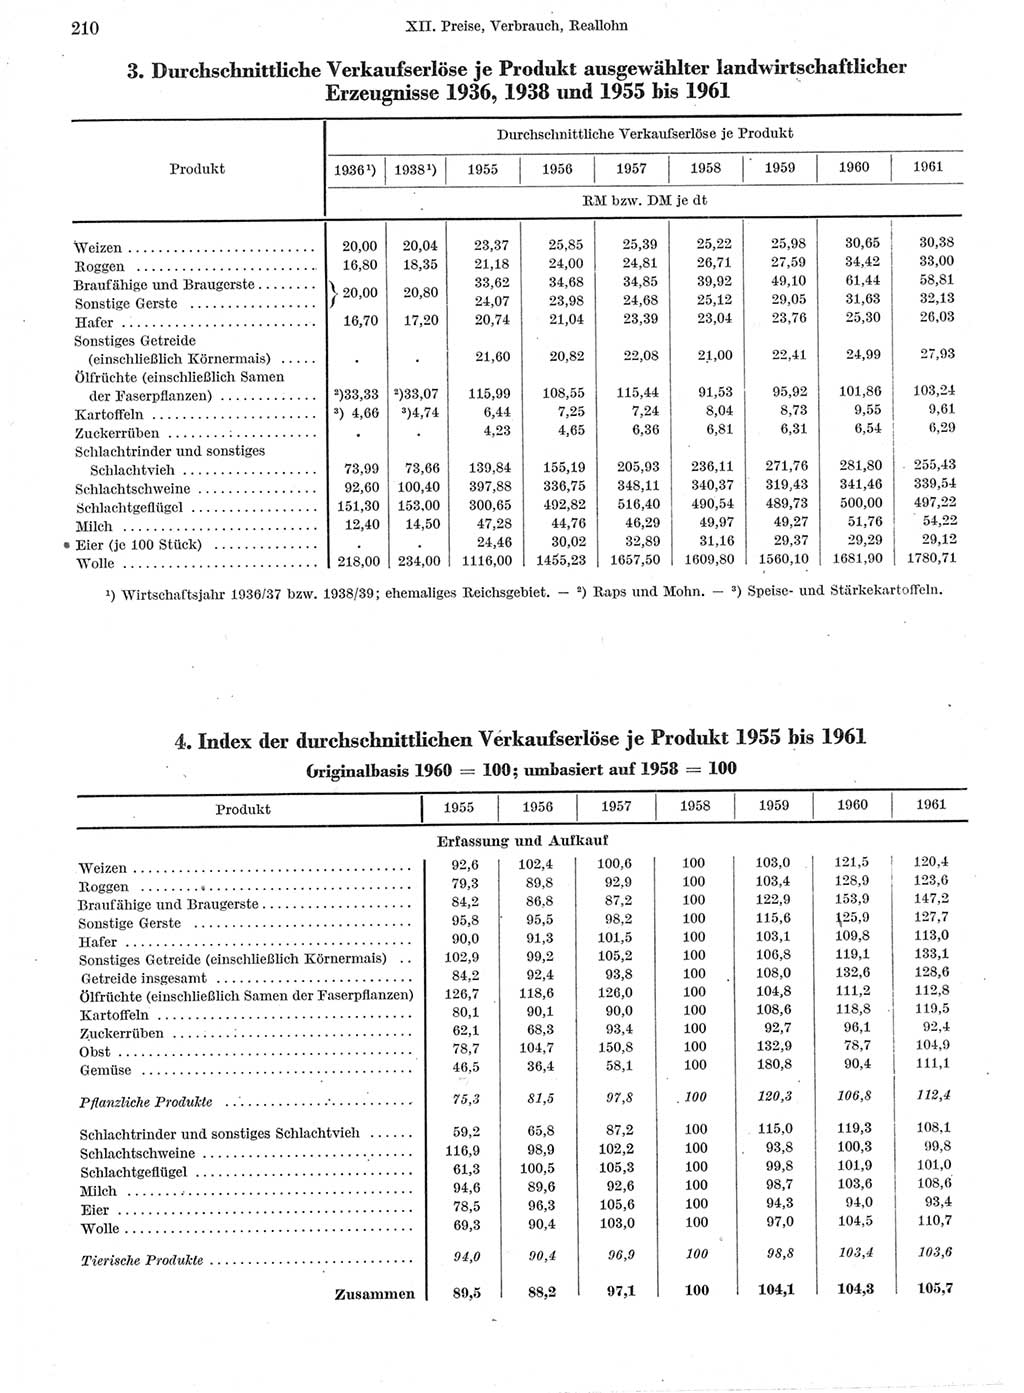 Statistisches Jahrbuch der Deutschen Demokratischen Republik (DDR) 1962, Seite 210 (Stat. Jb. DDR 1962, S. 210)